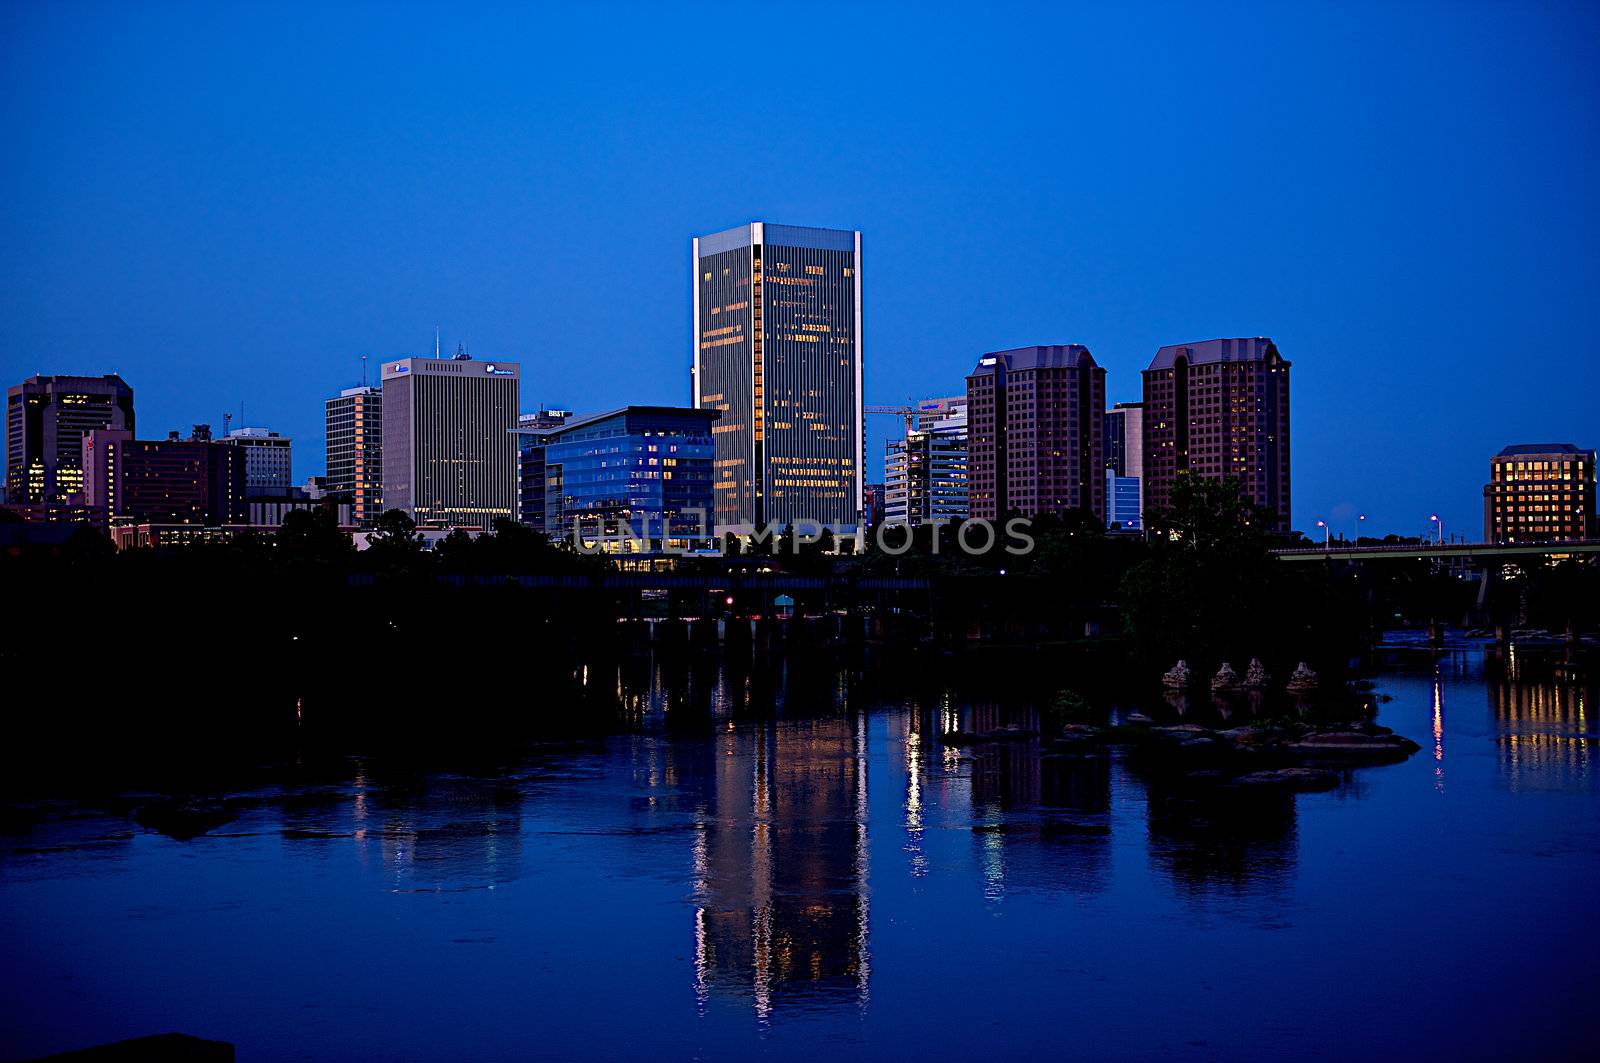 Richmond City Skyline by dmvphotos